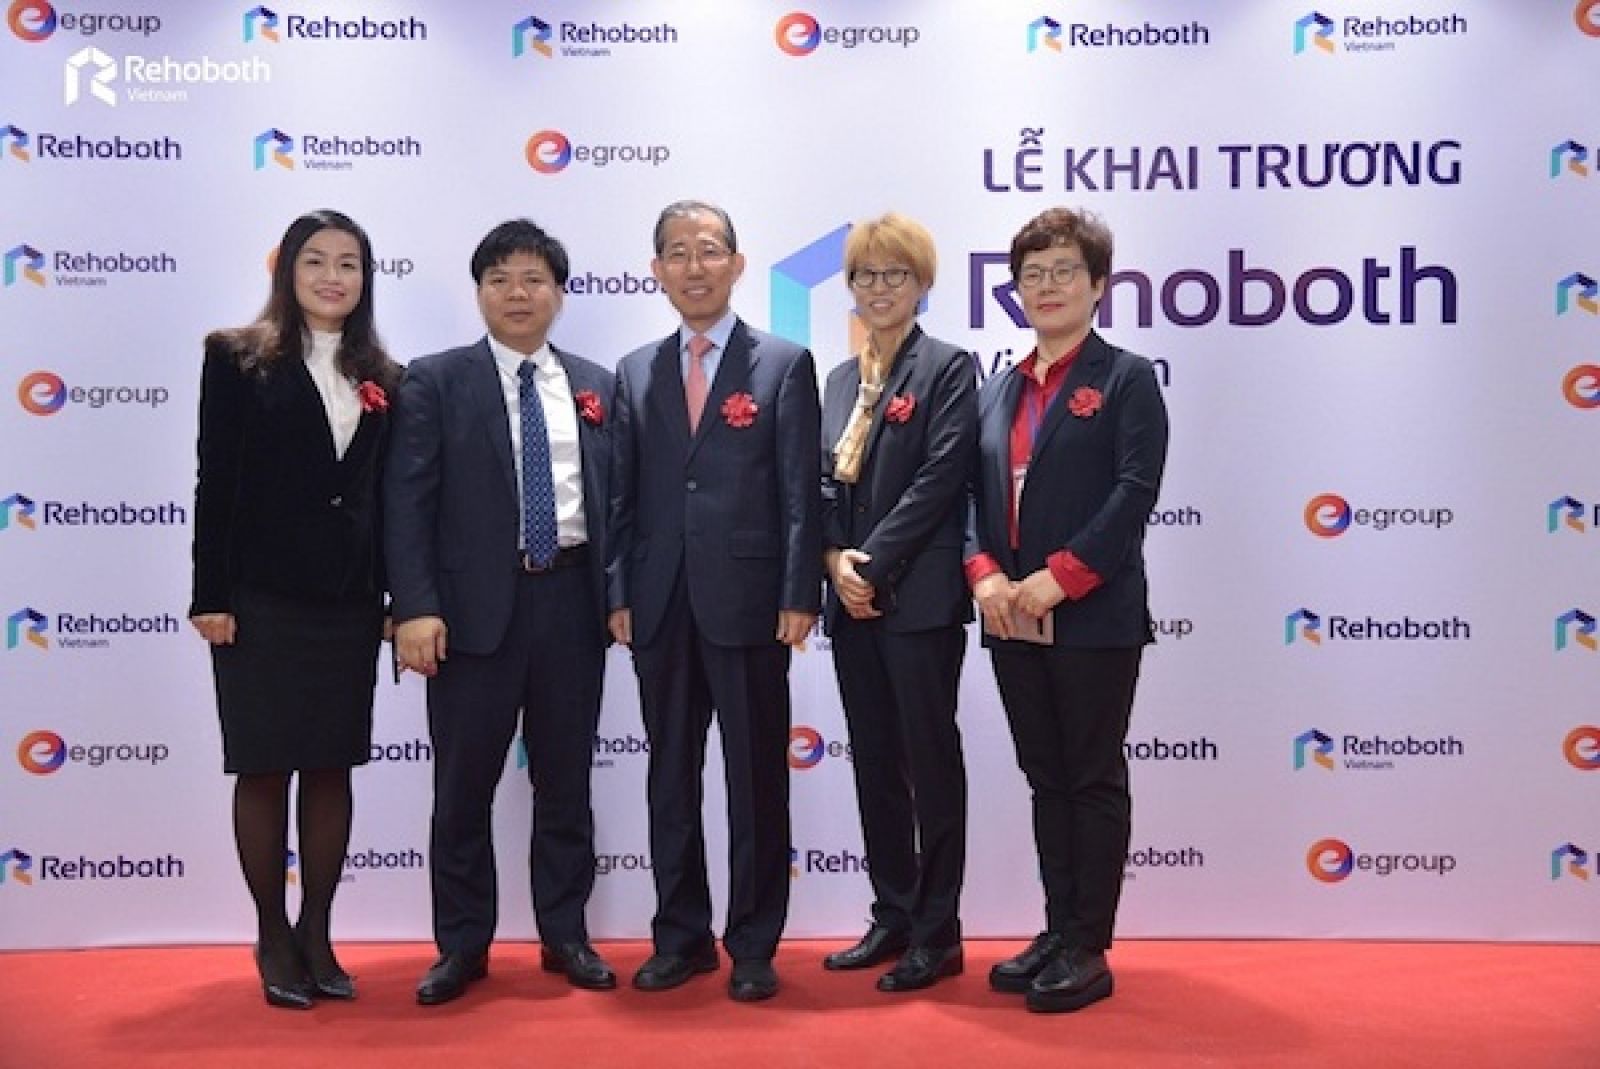  Lễ khai trương Rehoboth Việt Nam với sự tham dự của Chủ tịch Tập đoàn Egroup - Ông Nguyễn Ngọc Thủy cùng CEO Rehoboth - Ông Yang Du Mok và các đại diện hai bên.